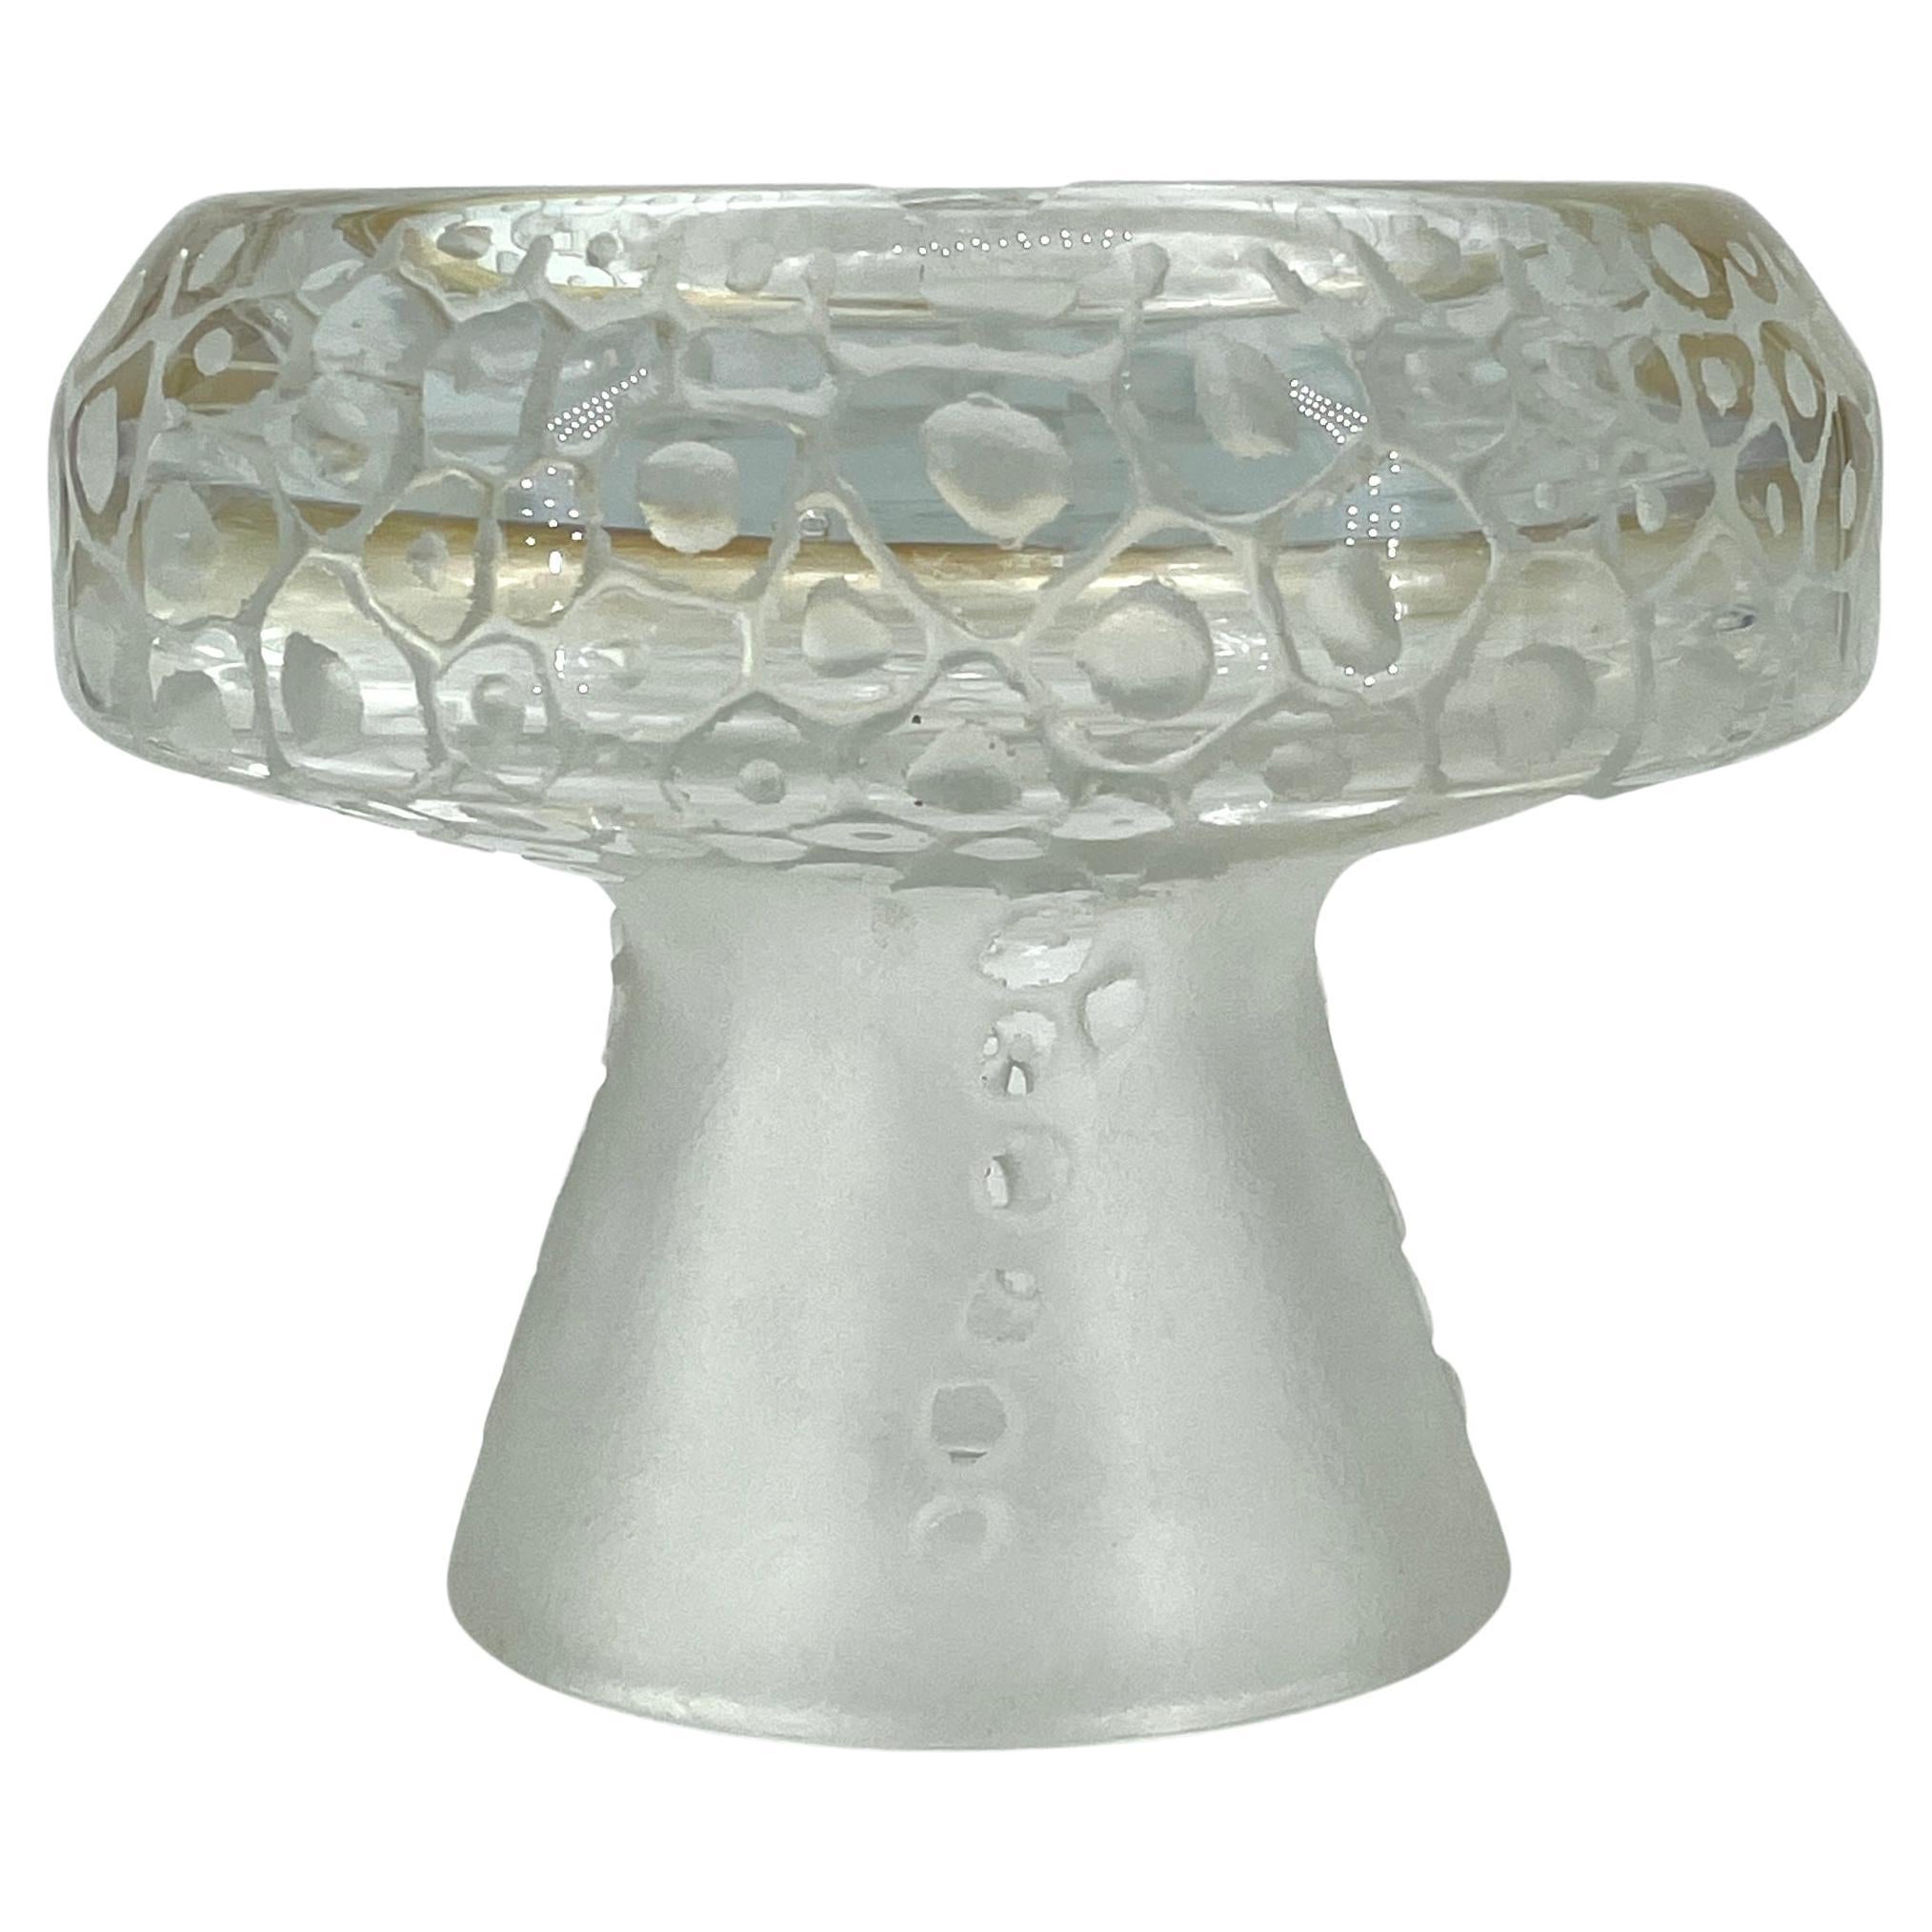 1960s Dolomite Mushroom Art Glass Footed Ashtray Vintage Italian Mid-Century Era